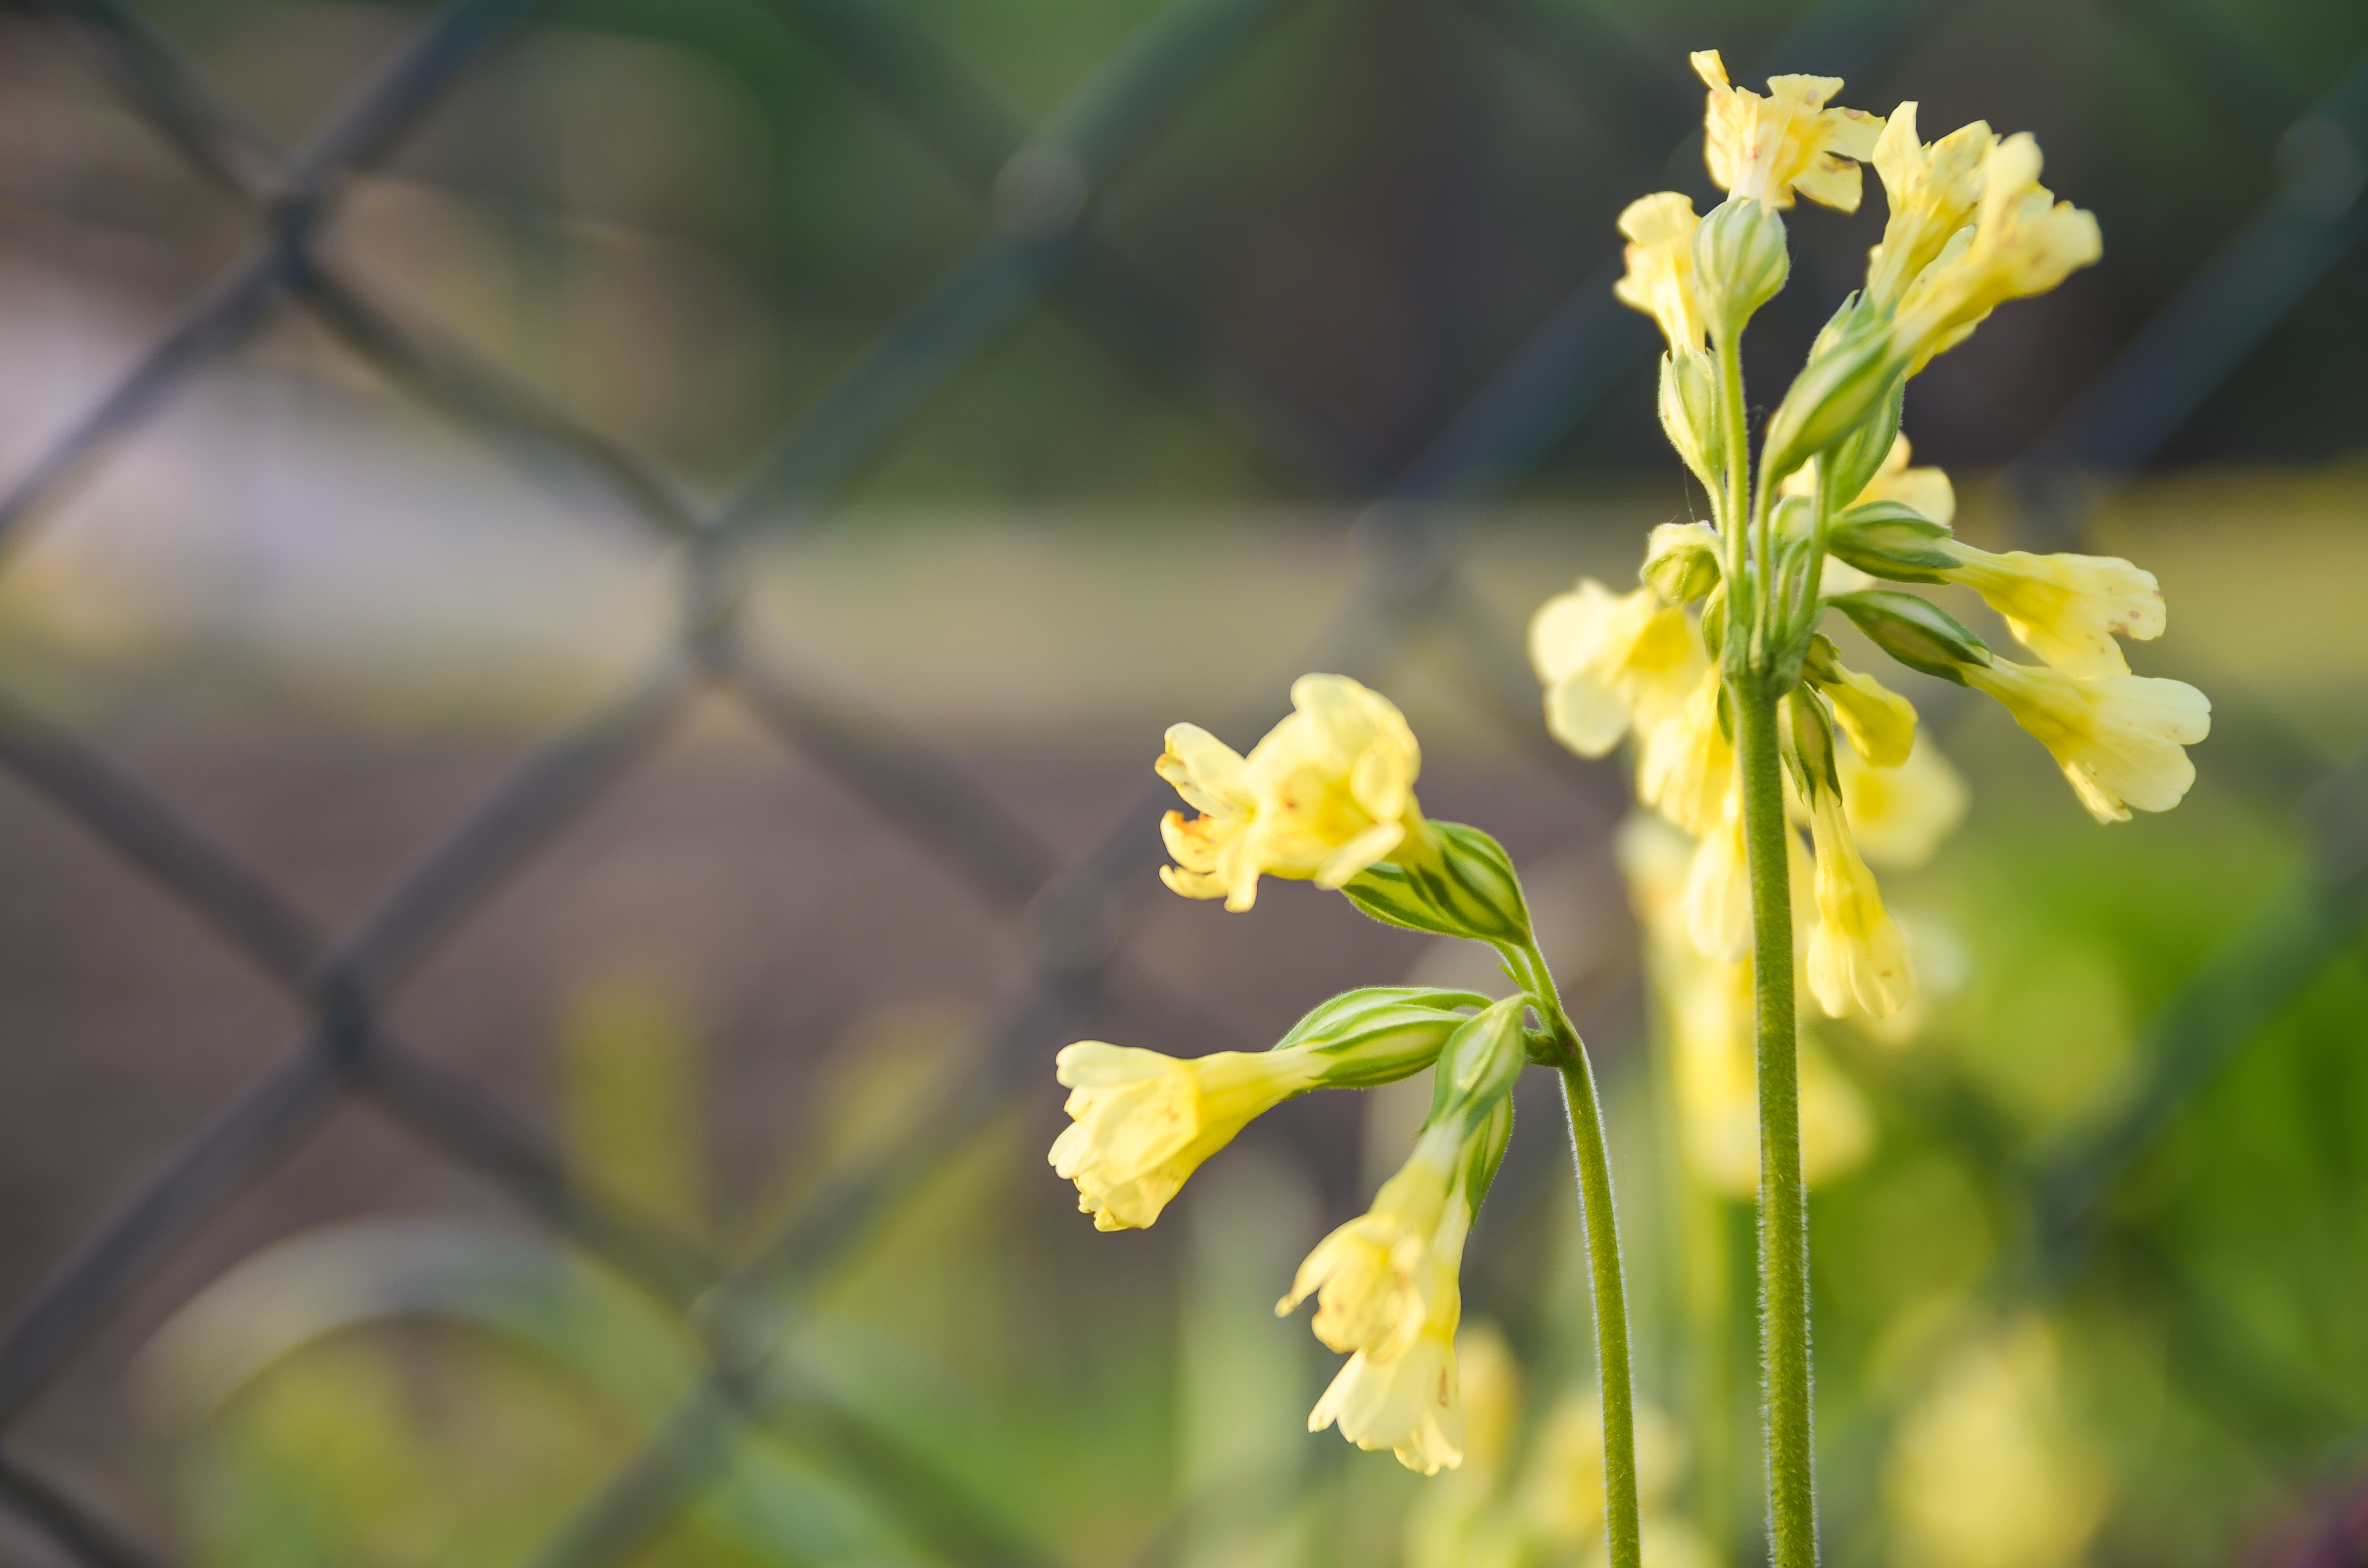 Blurred Yellow Flowers - Moni's Photo